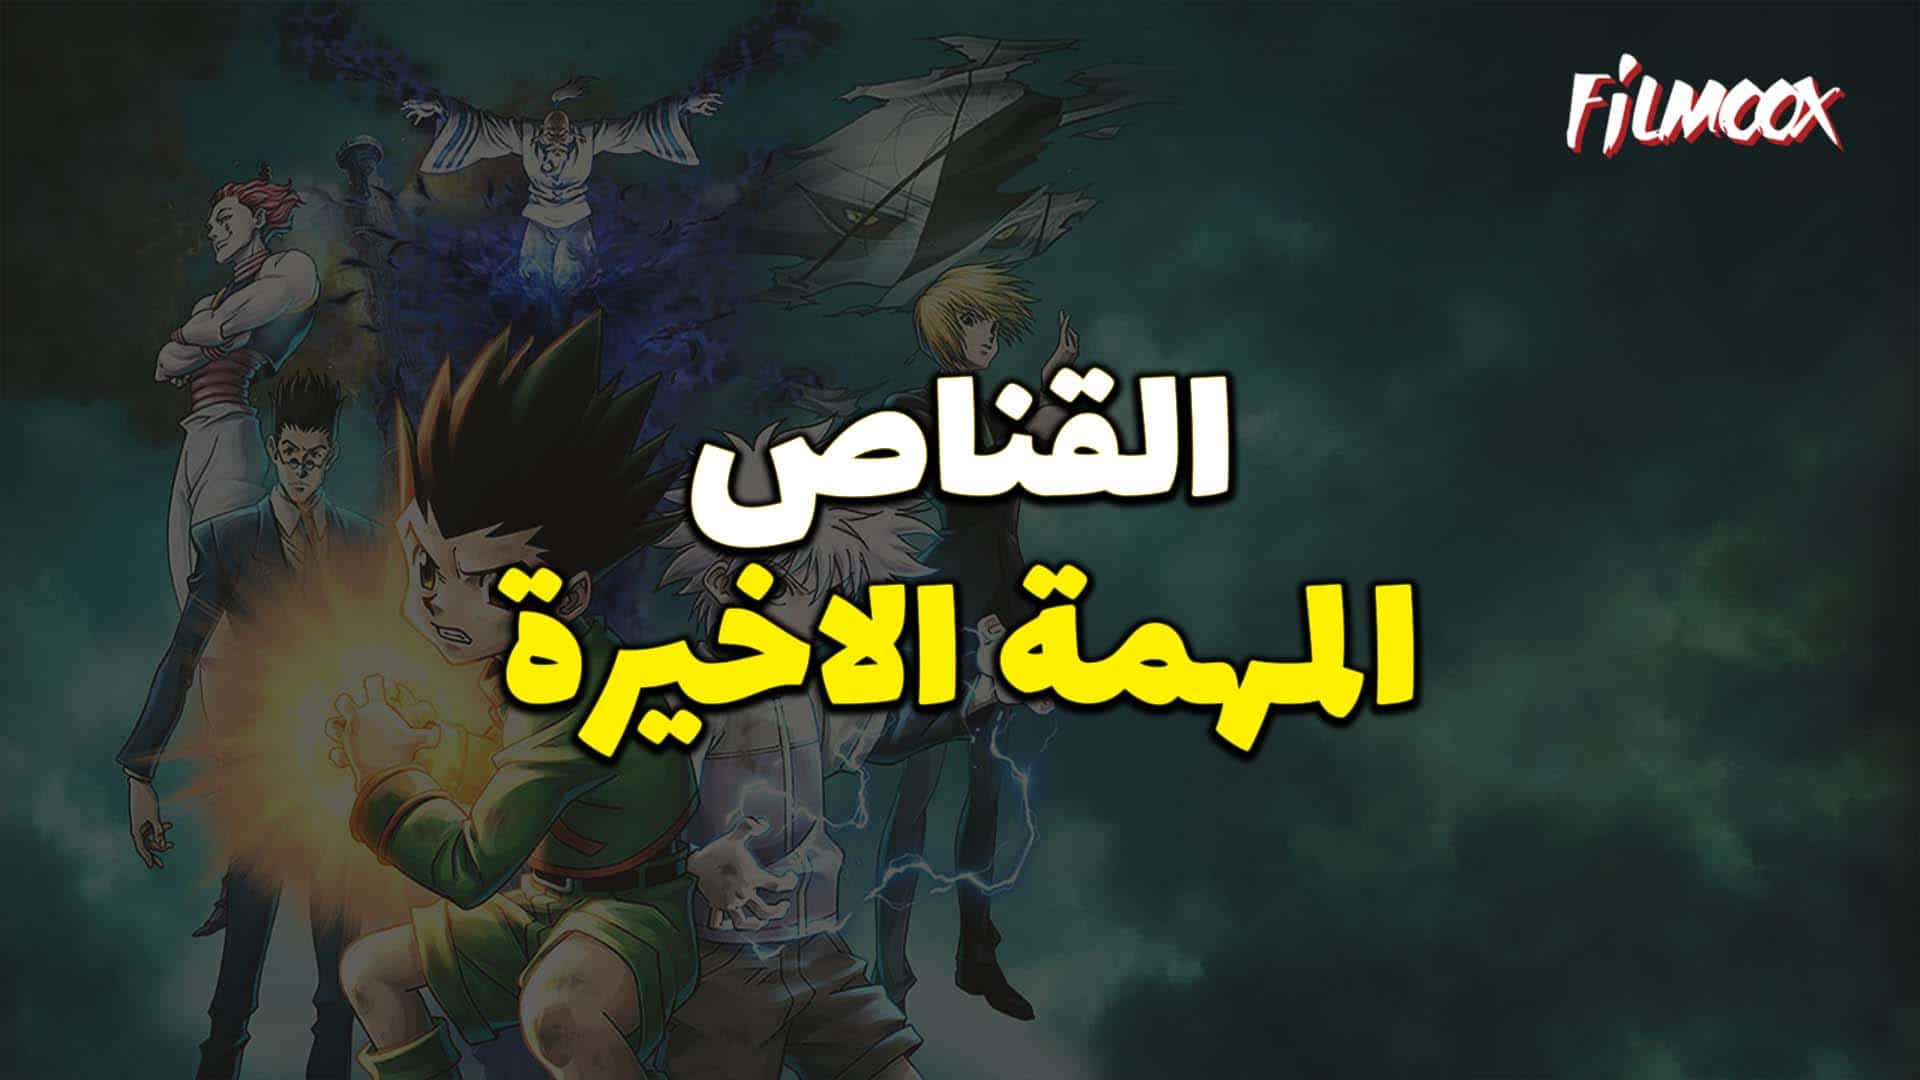 فيلم انمي القناص : المهمة الاخيرة مدبلج بالعربية